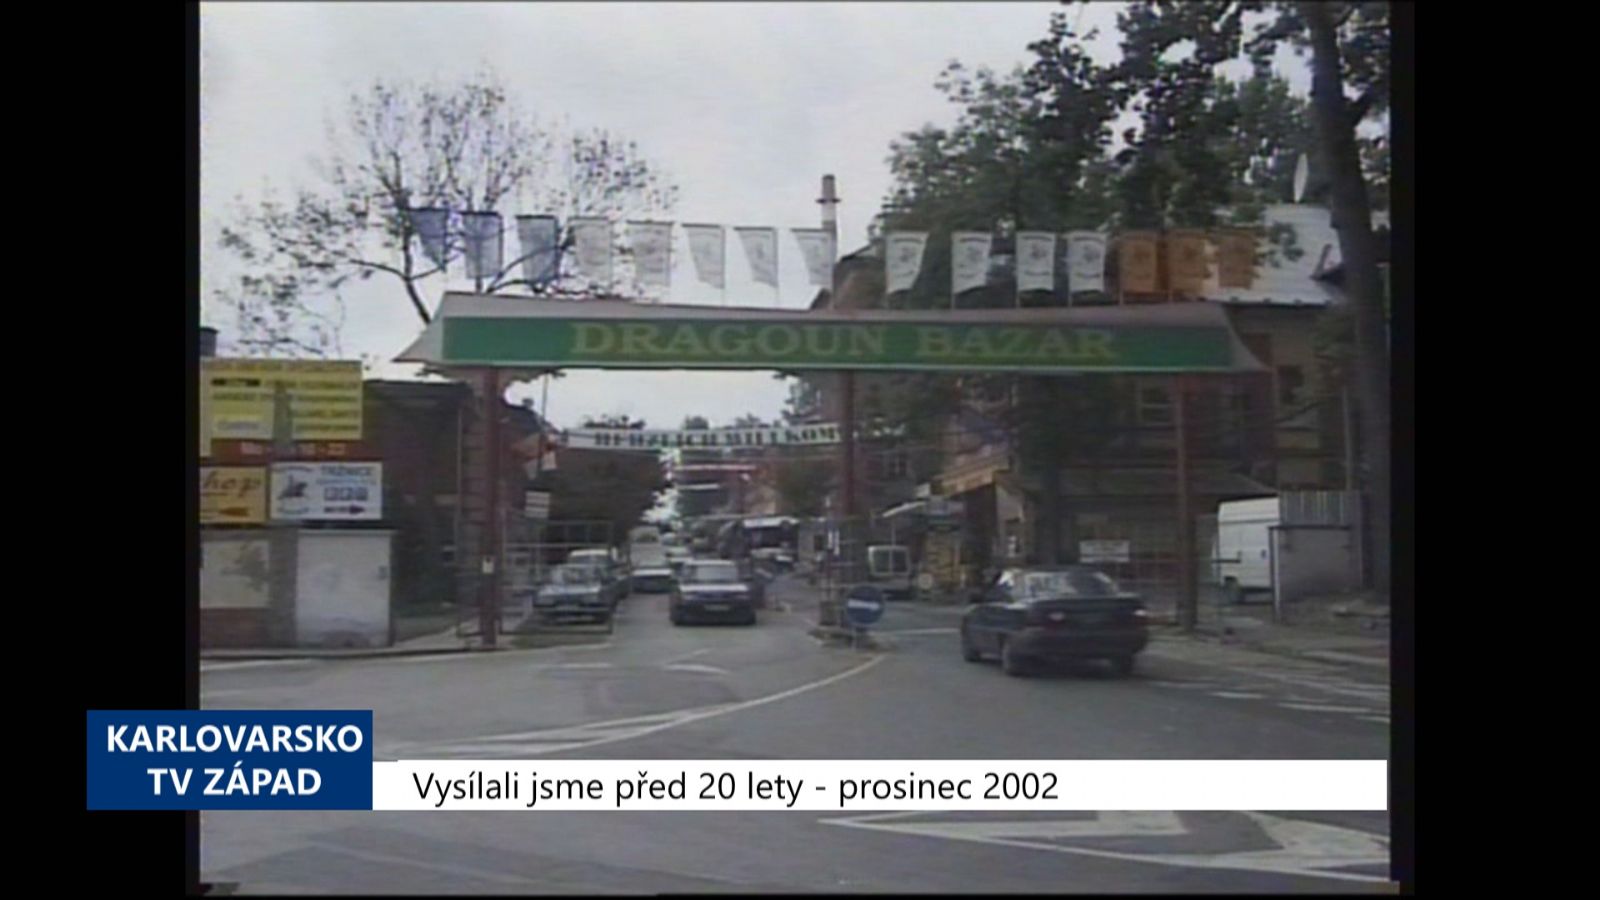 2002 – Cheb: Nezaplacení za Dragoun se bude řešit právní cestou (TV Západ)